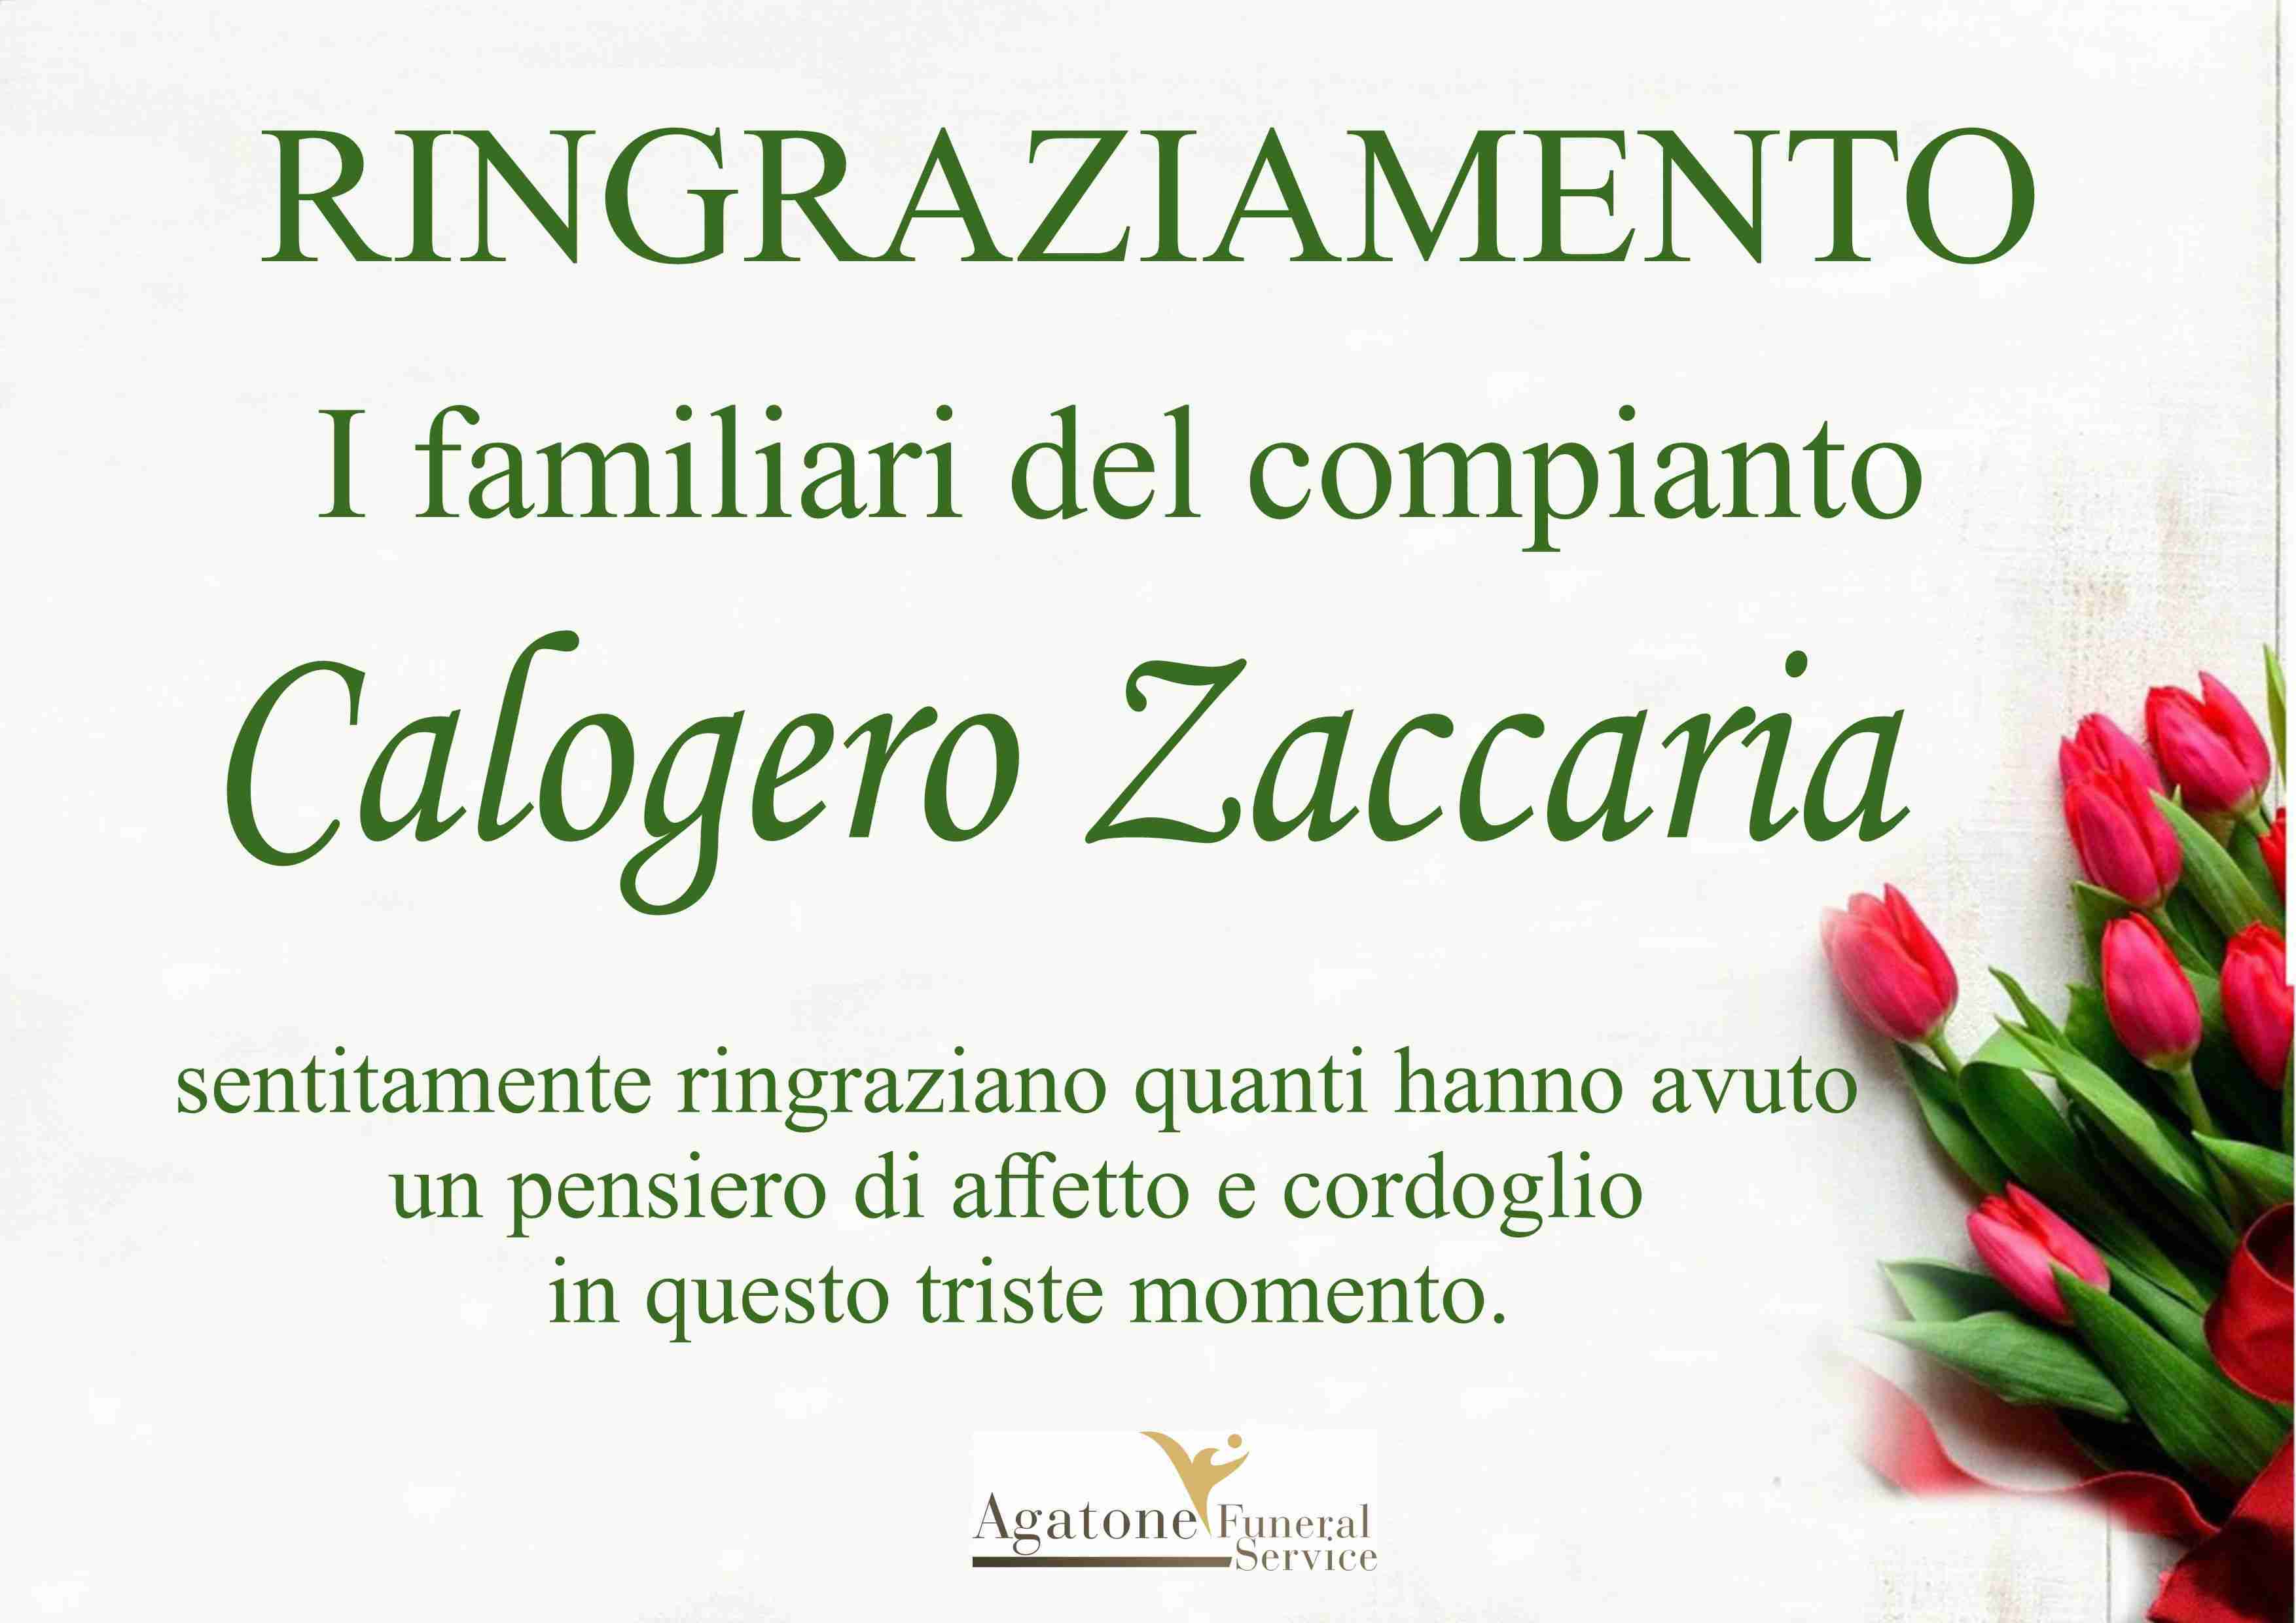 Zaccaria Calogero